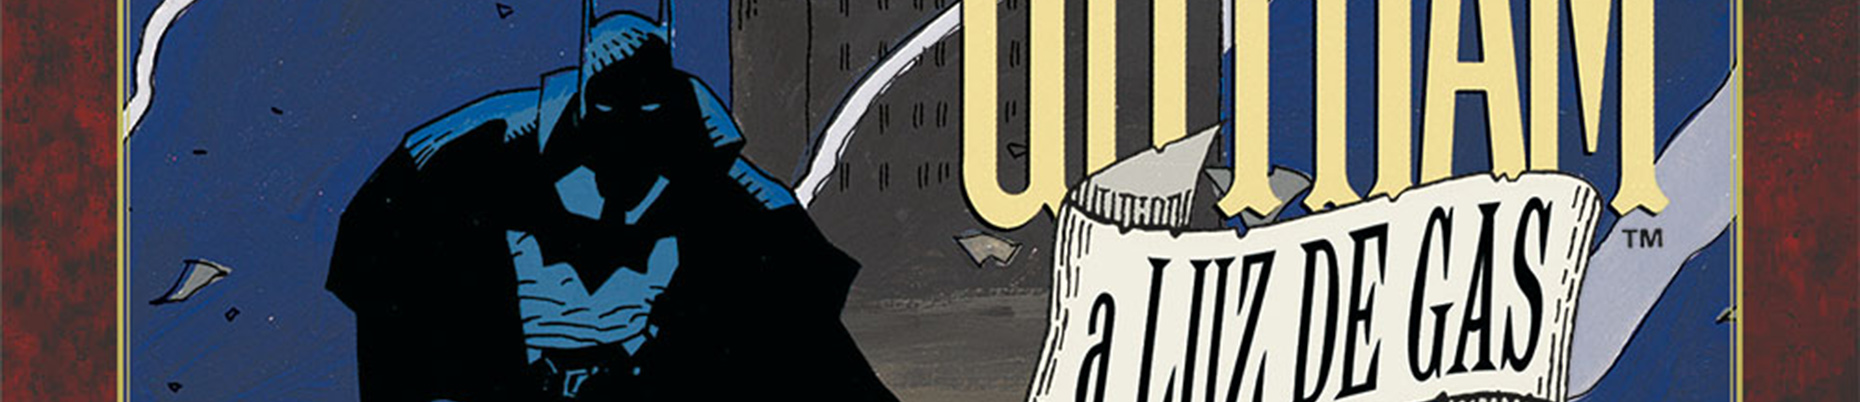 Review del cómic Batman: Gotham a luz de gas de Brian Augustyn - ECC  Ediciones